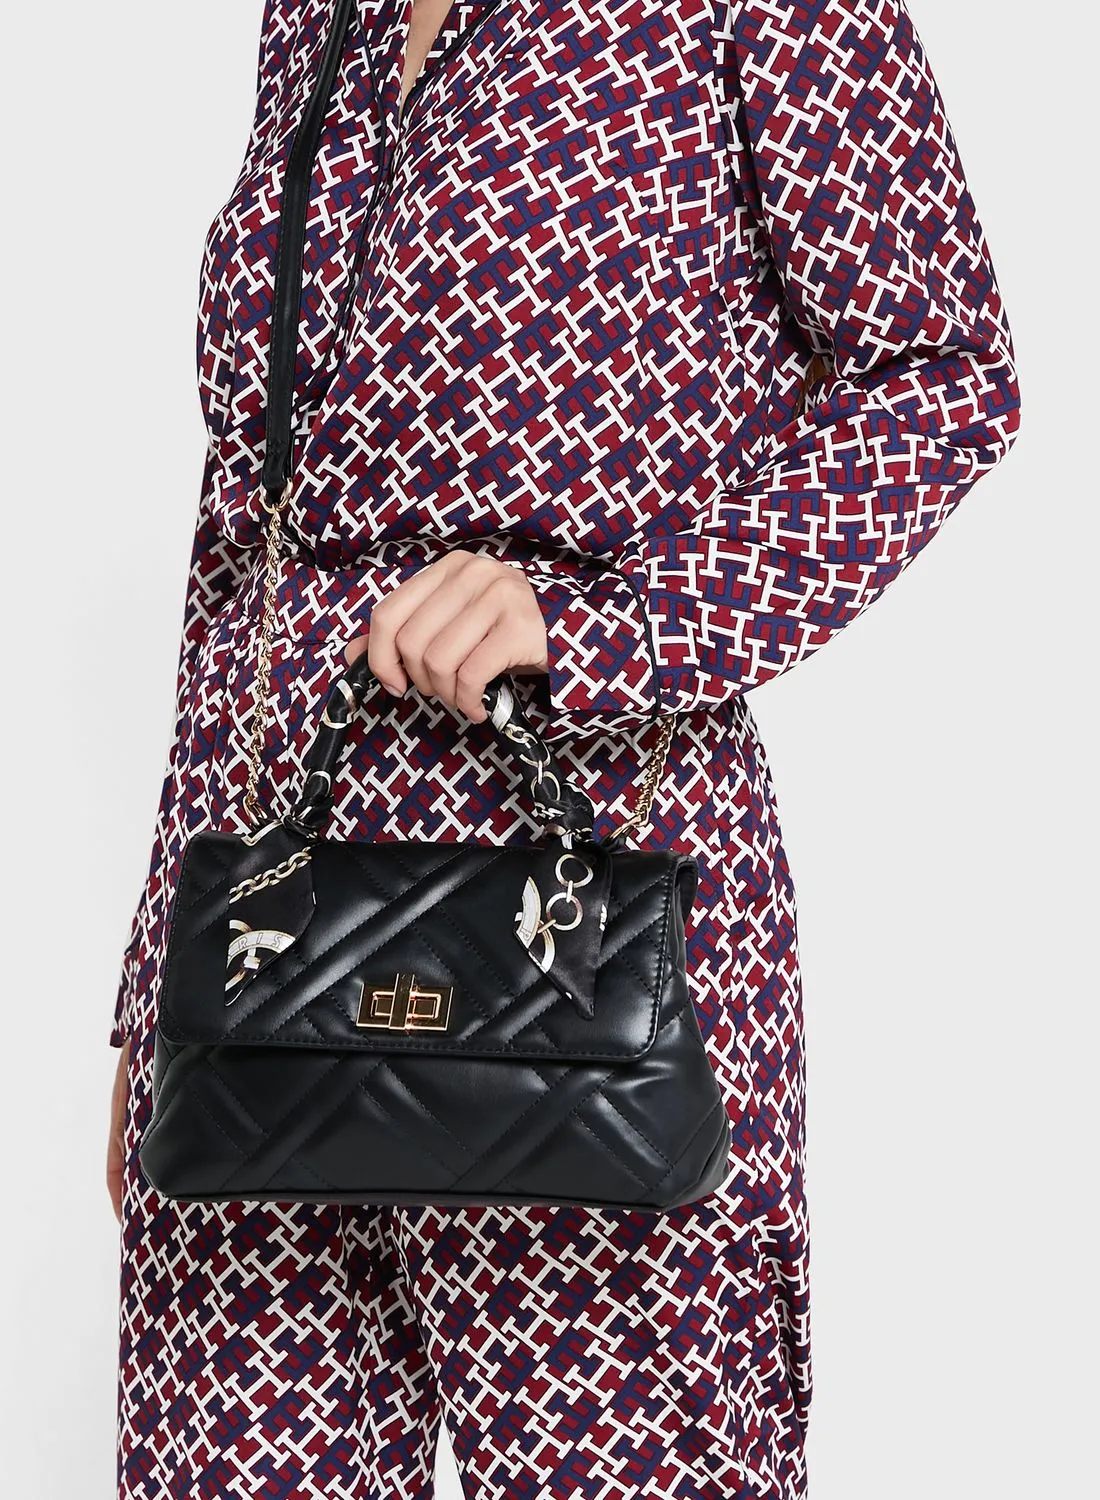 ELLA Quilted Satchel Handbag With Scarf Tie Handle